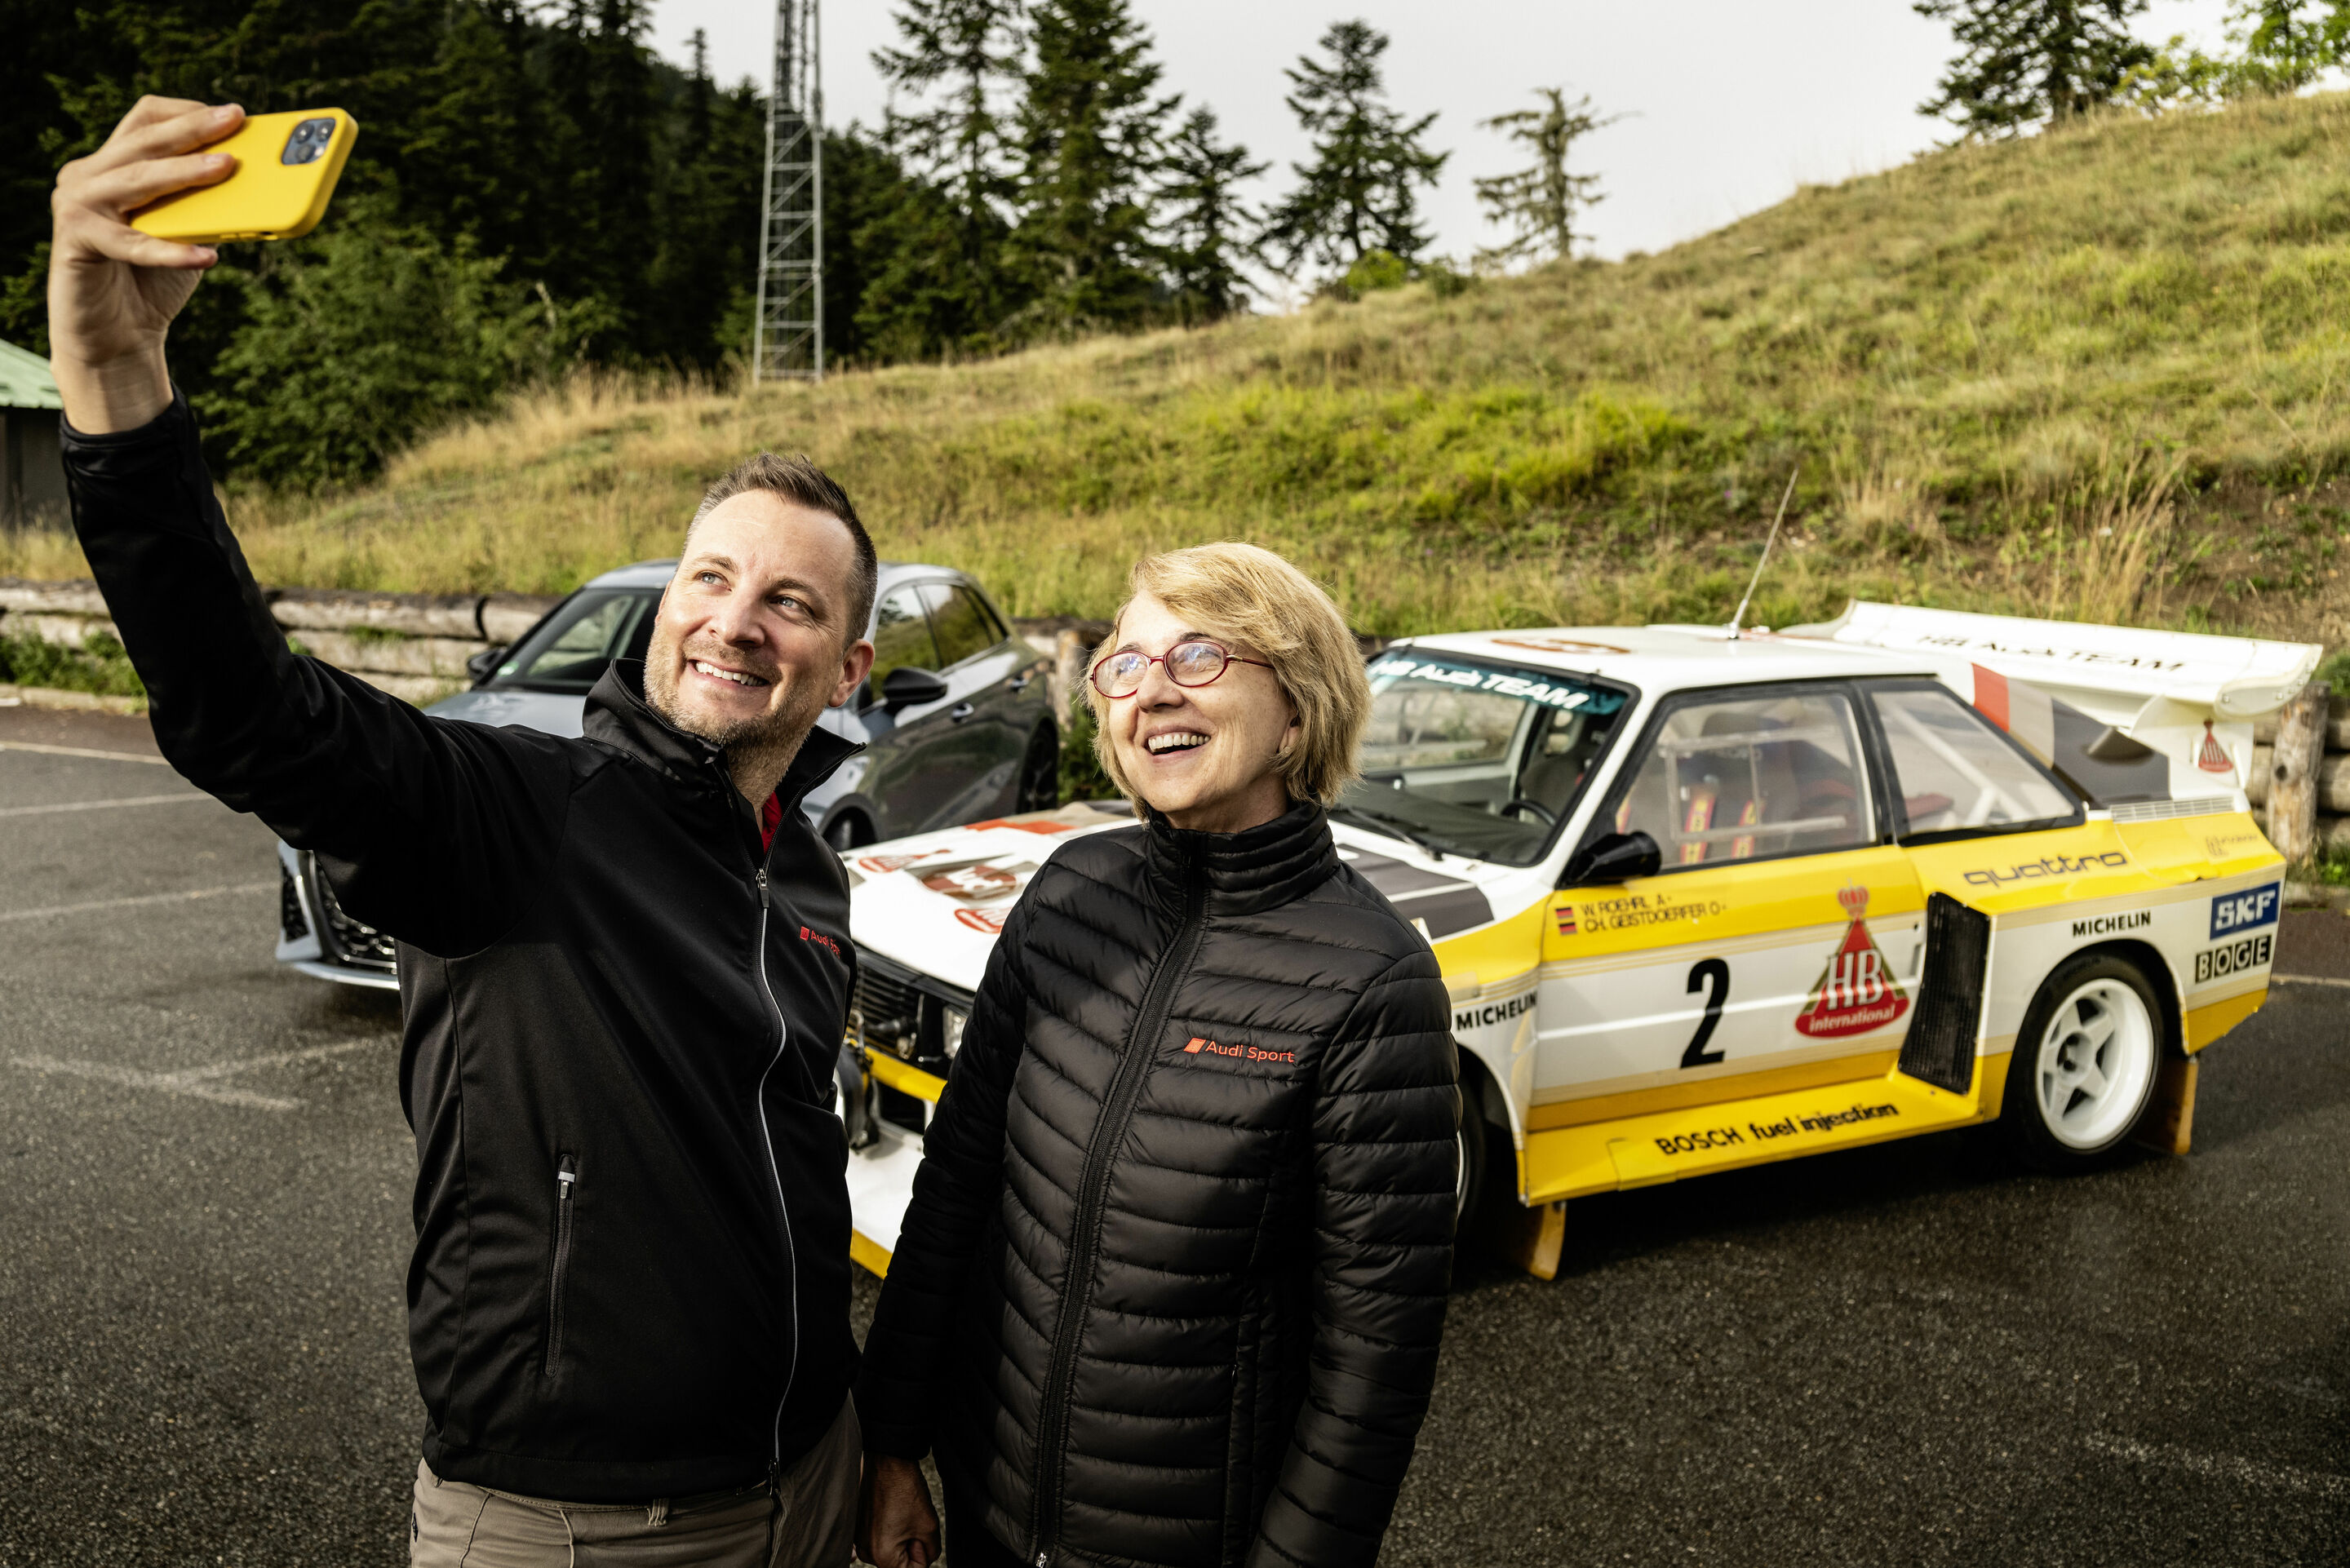 Rallye-Co-Pilotin Fabrizia Pons: „Der quattro lässt mich bis heute nicht los“